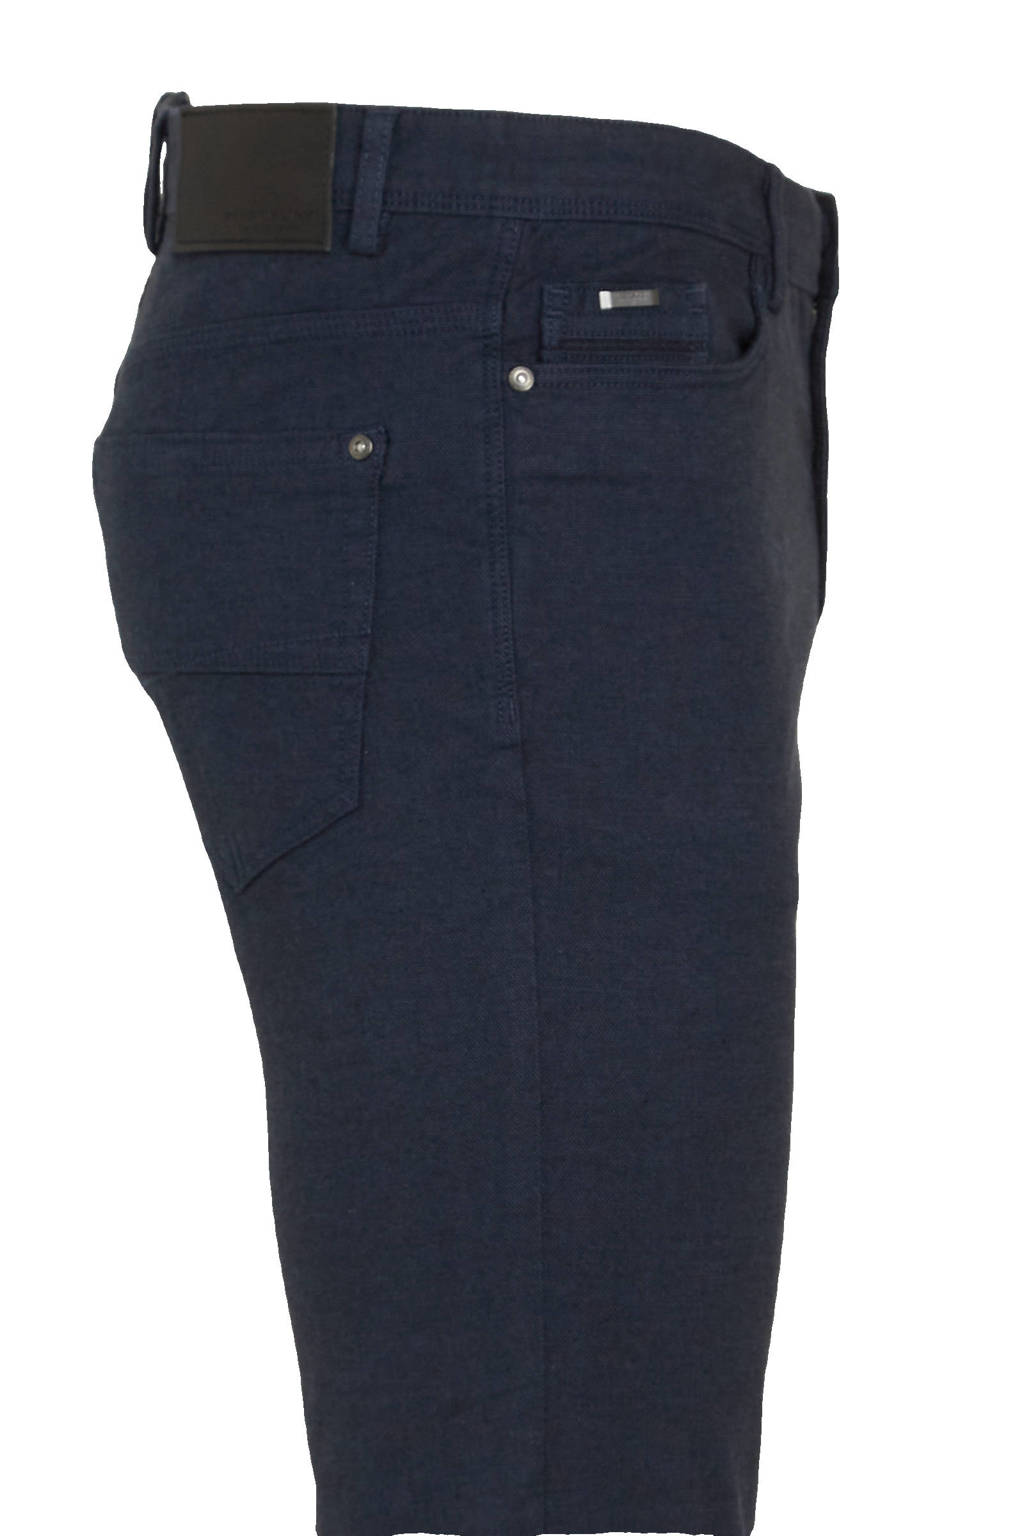 spanning vieren de jouwe C&A Westbury Premium regular fit broek donkerblauw | wehkamp